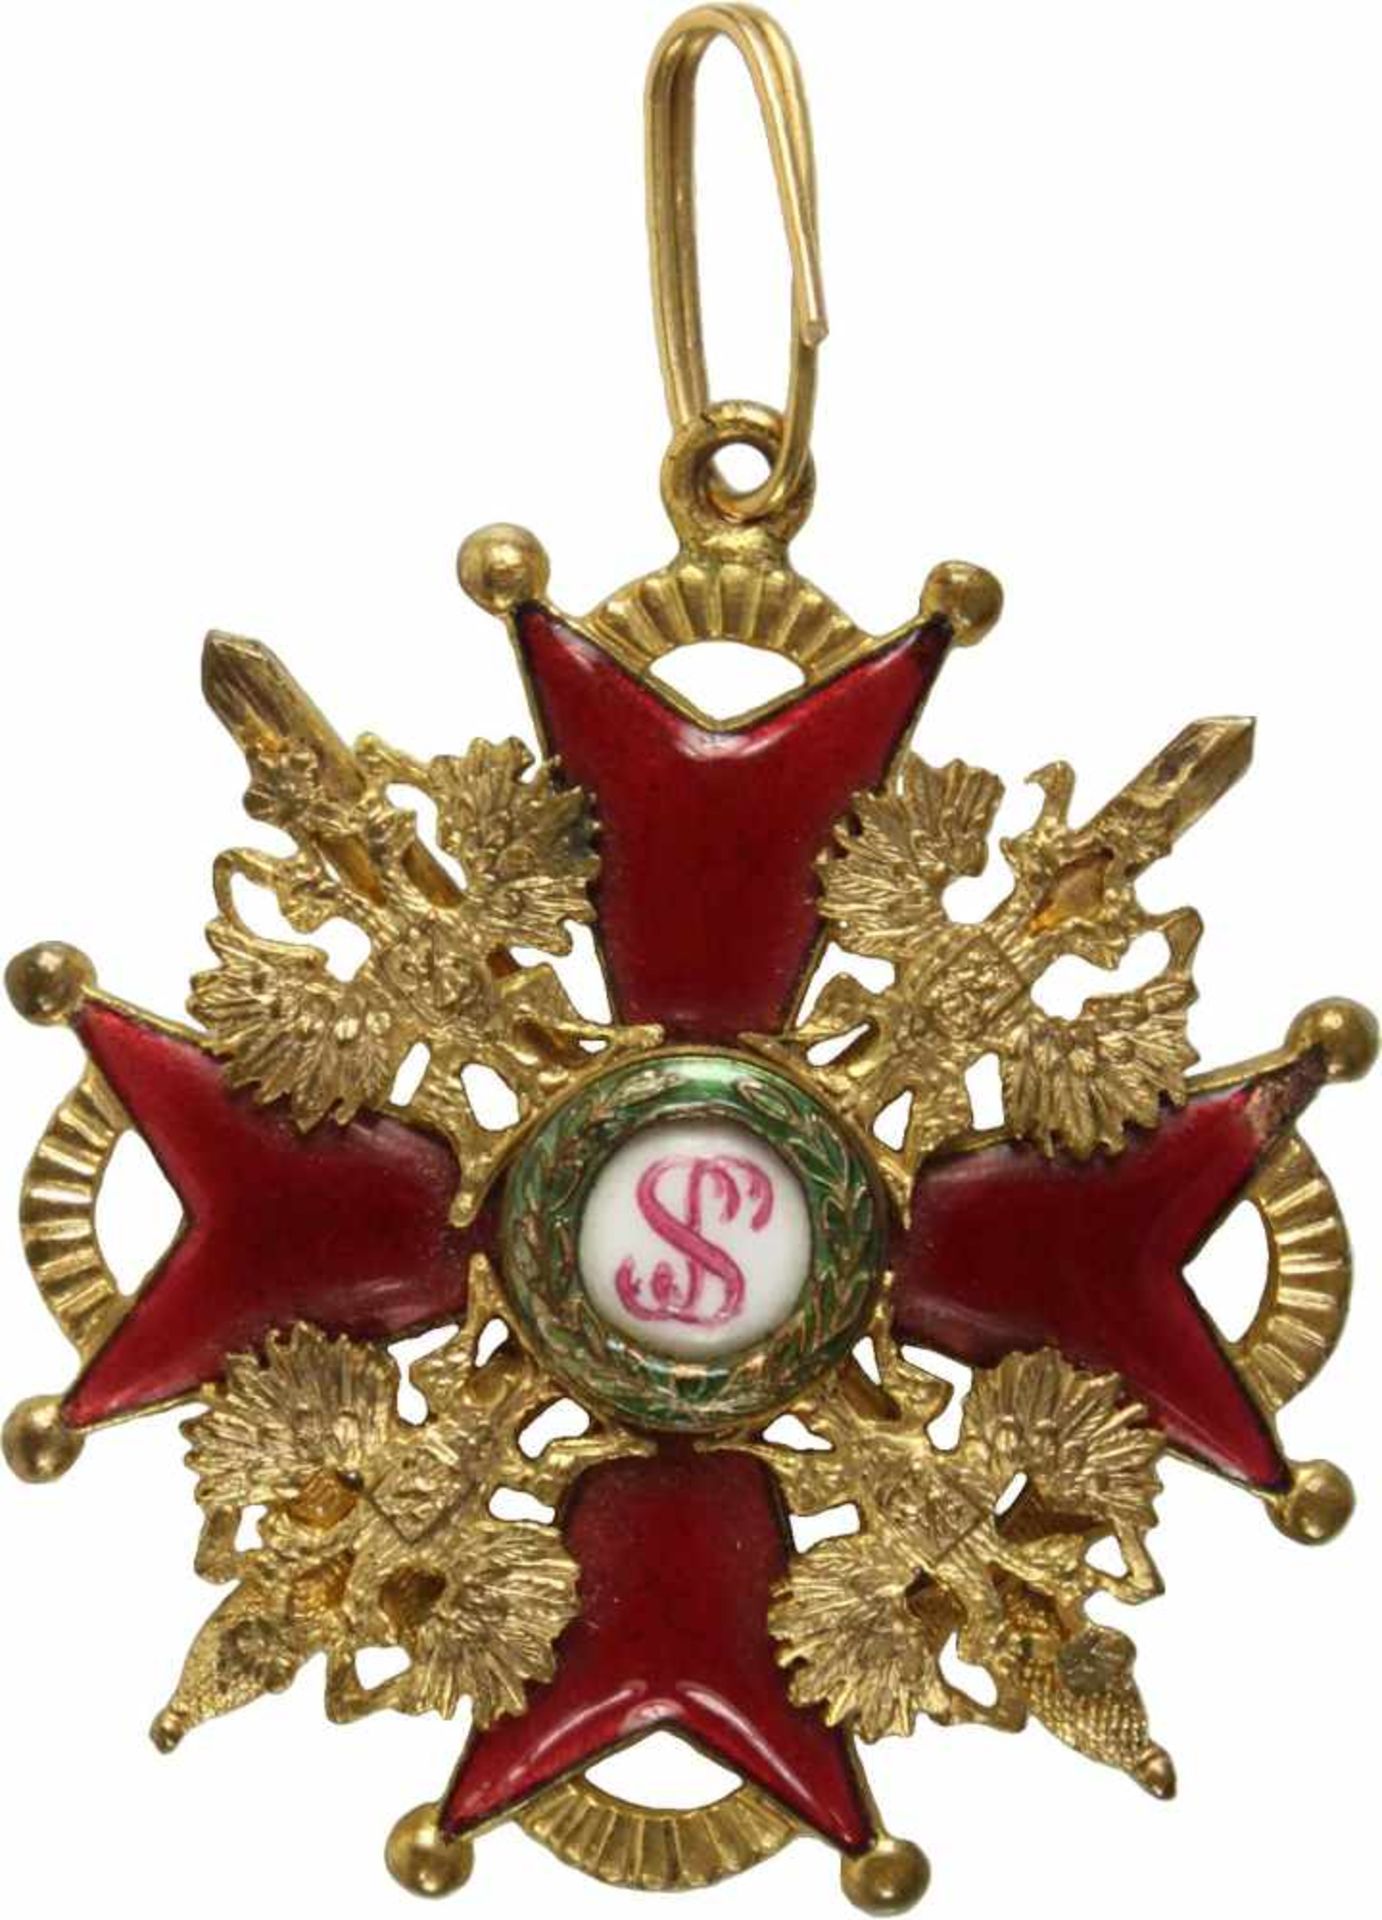 St. Stanislaus-Orden,Kreuz 3. Klasse mit Schwertern. Kreuz Bronze vergoldet und emailliert, 38mm.